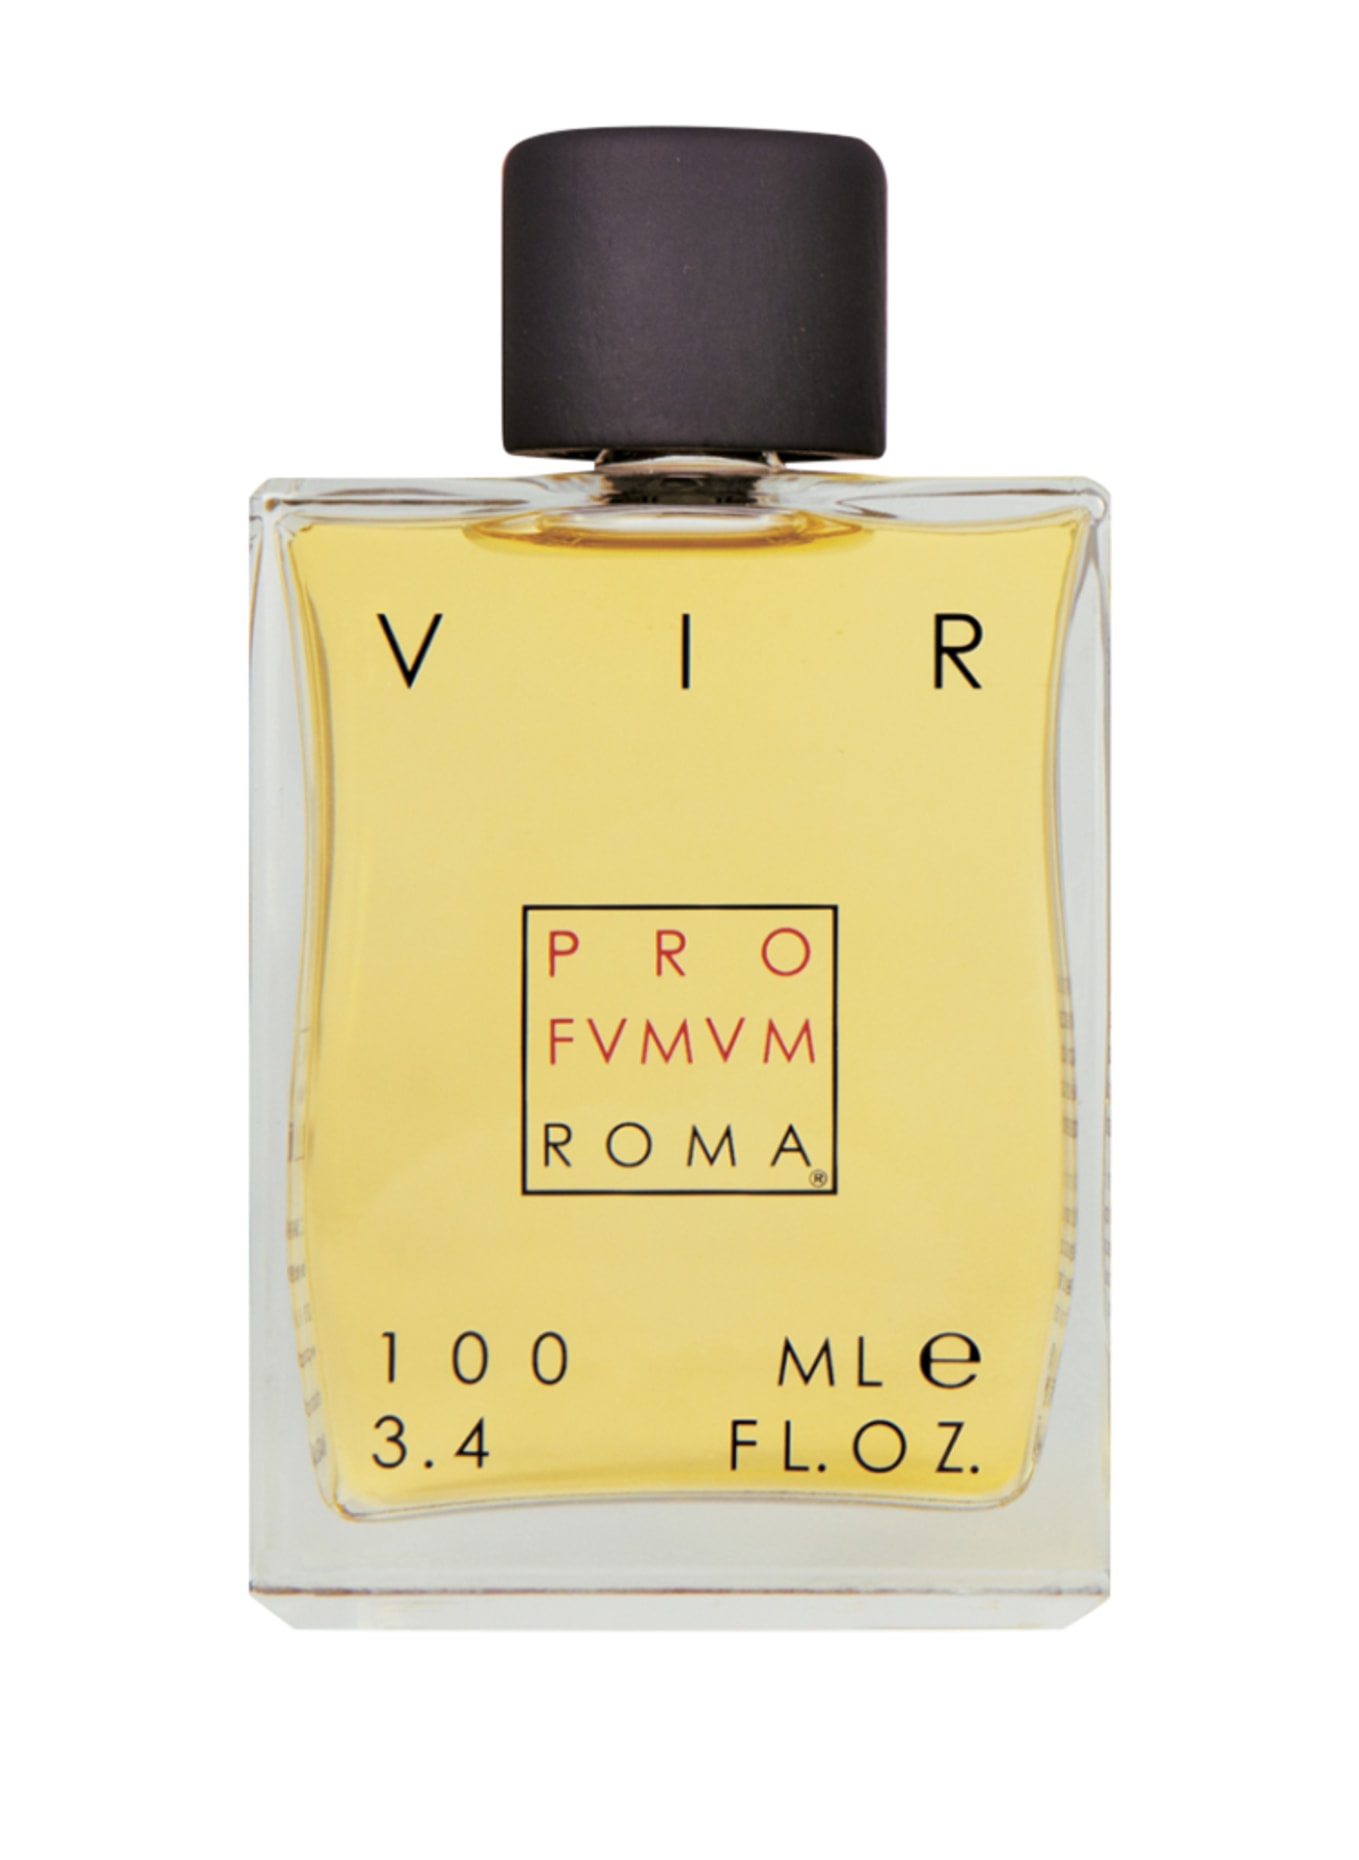 PRO FVMVM ROMA VIR (Obrazek 1)